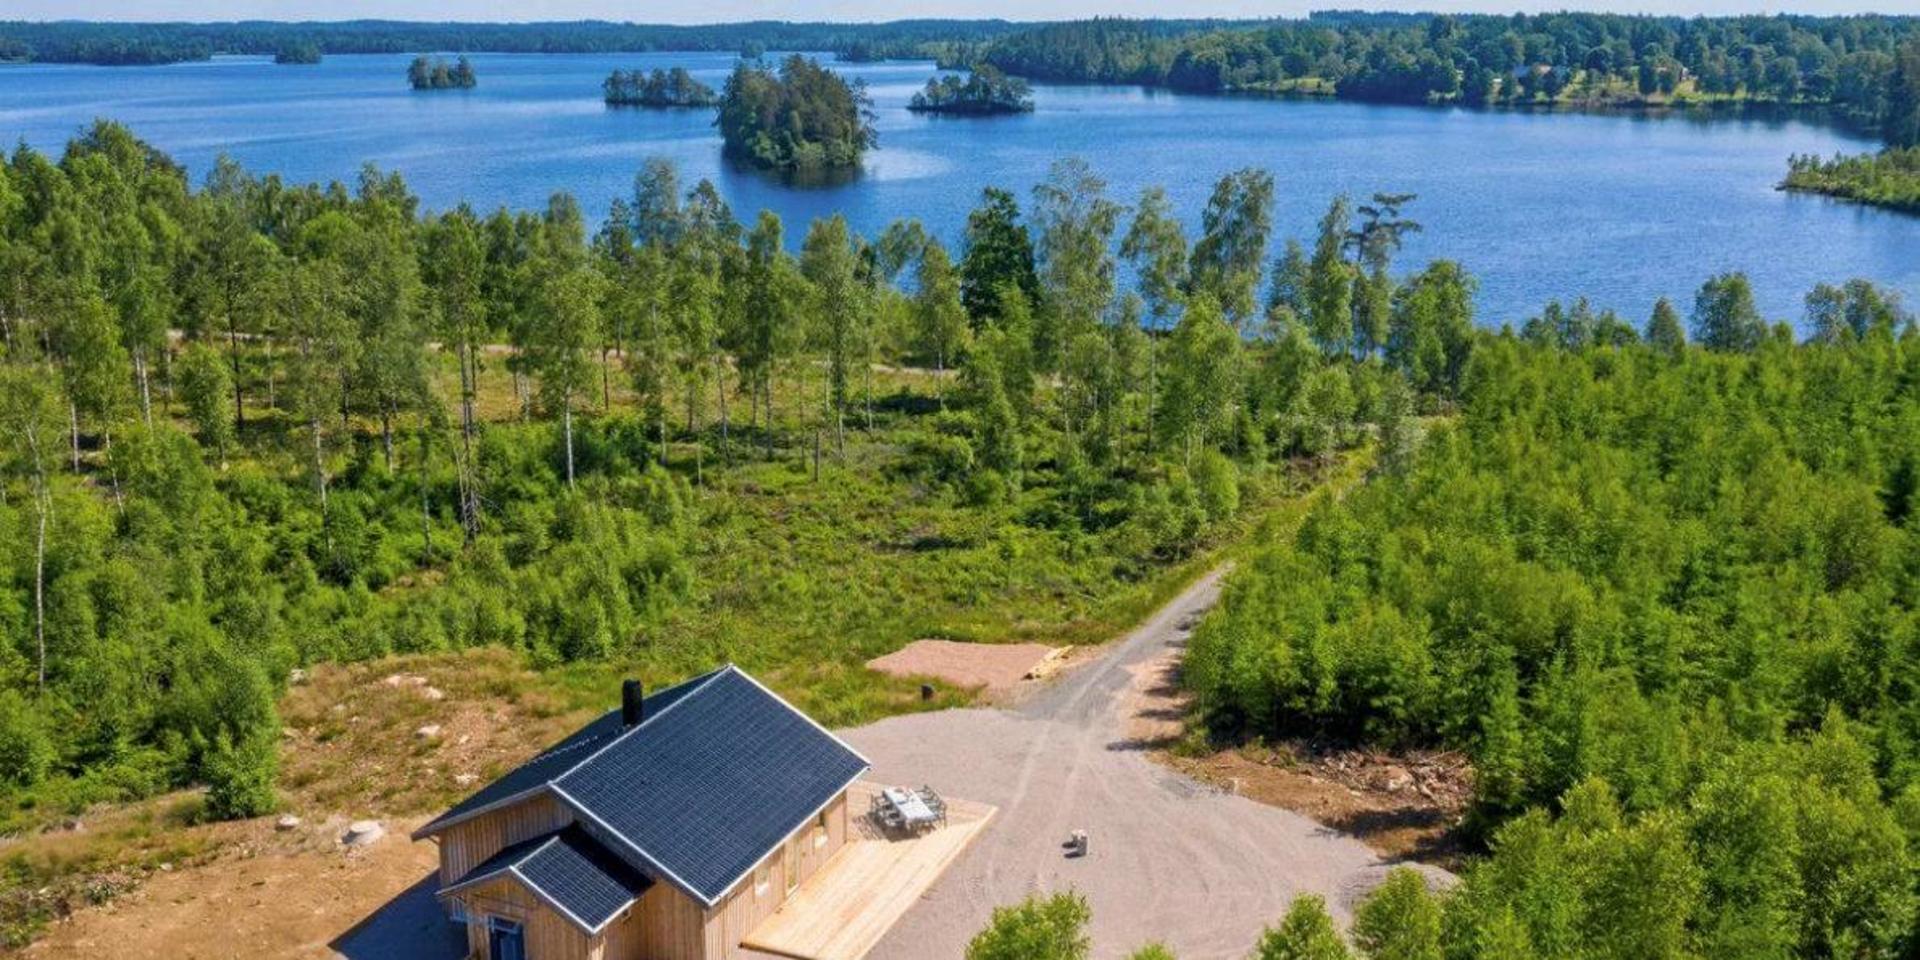 Fritidshuset som är till salu för 3.2 miljoner. Det äger servitut för röjning av skogen ned mot sjön, för att behålla utsikten. Bild: Mäklarannons.